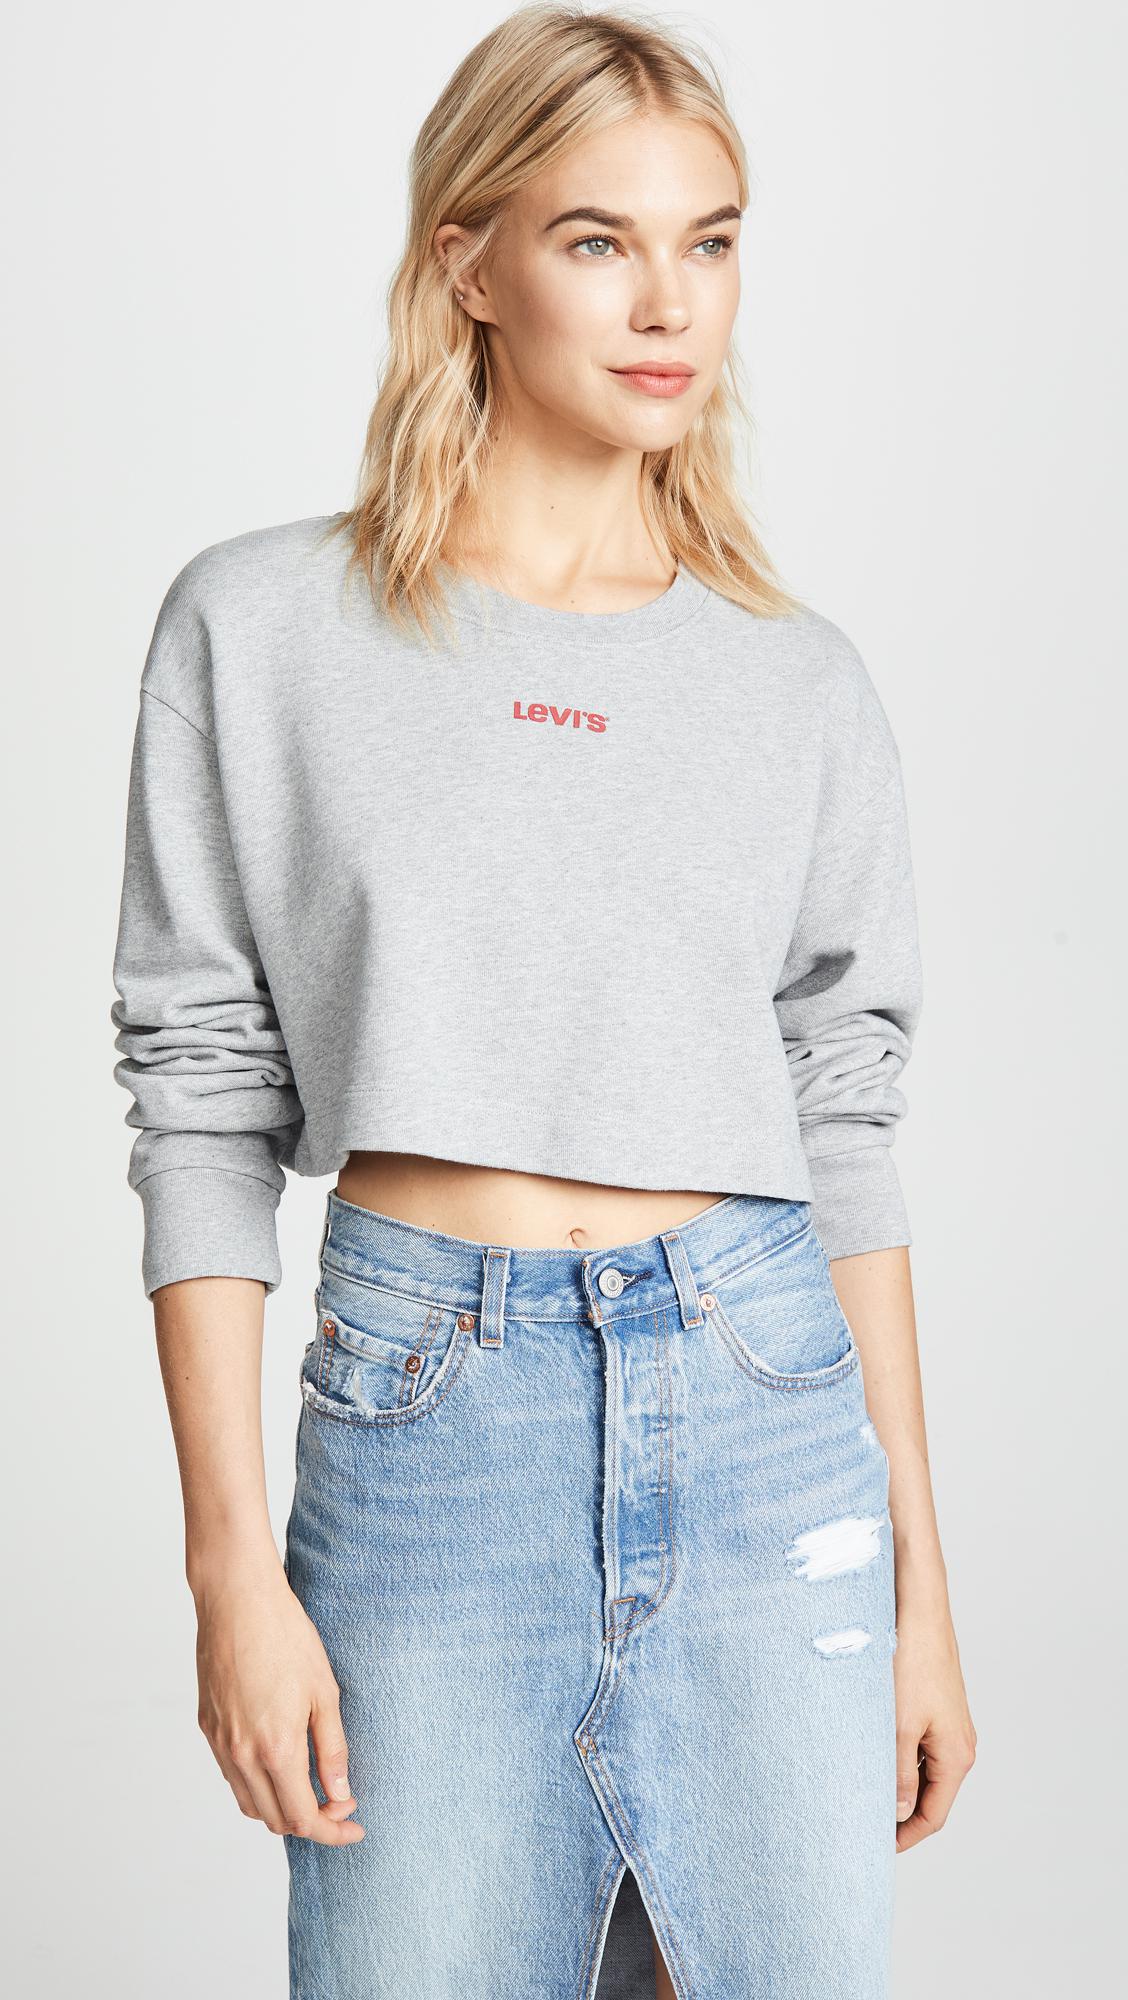 Levi's Fleece Cropped Sweatshirt in Gray - Lyst